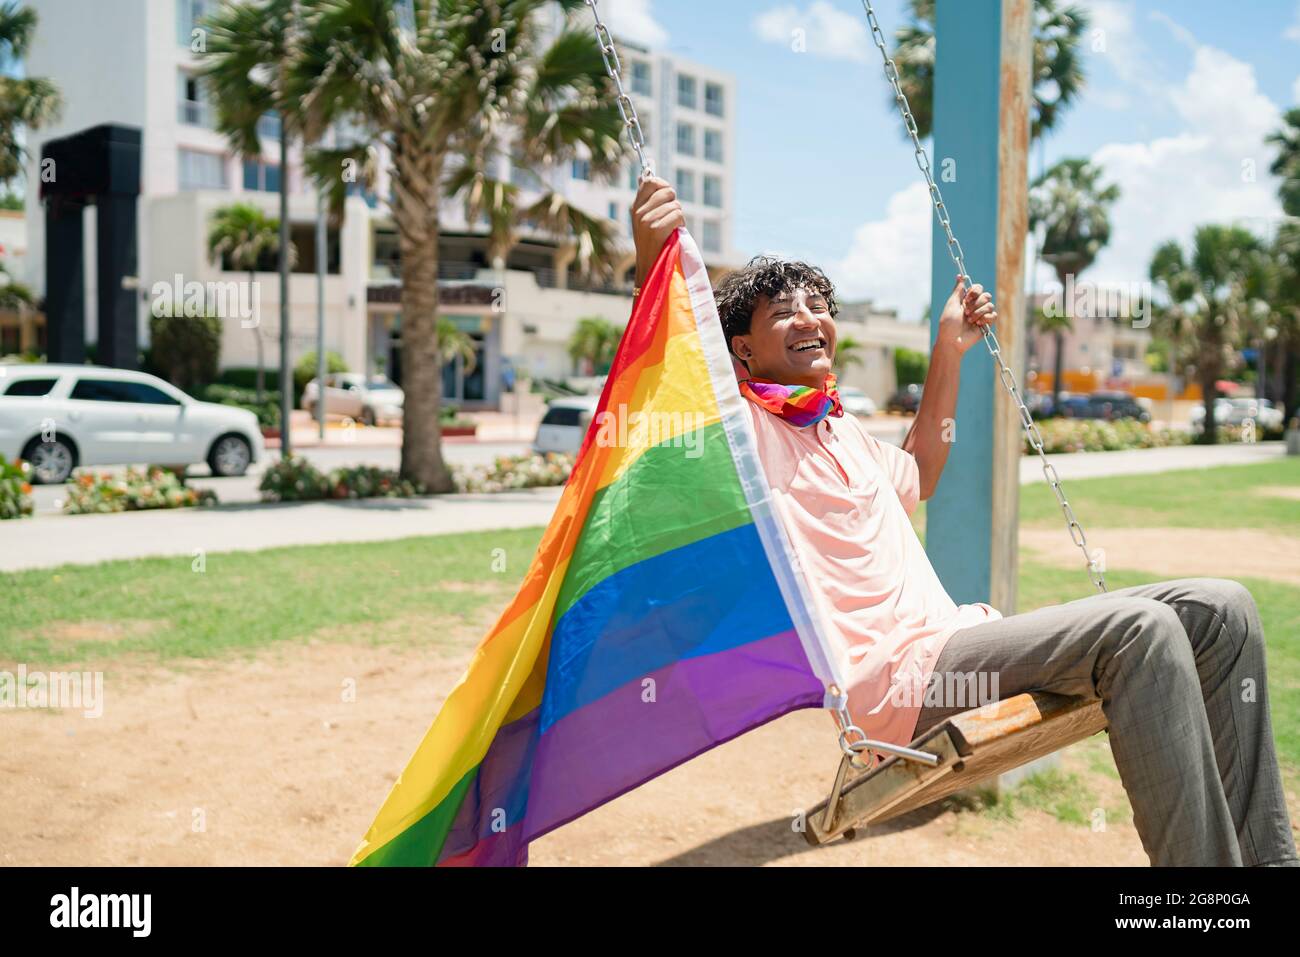 Porträt jungen schwulen hispanischen Jungen, der mit LGBT-Flagge und ein pinkes Poloshirt trägt horizontales Bild Stockfotografie - Alamy